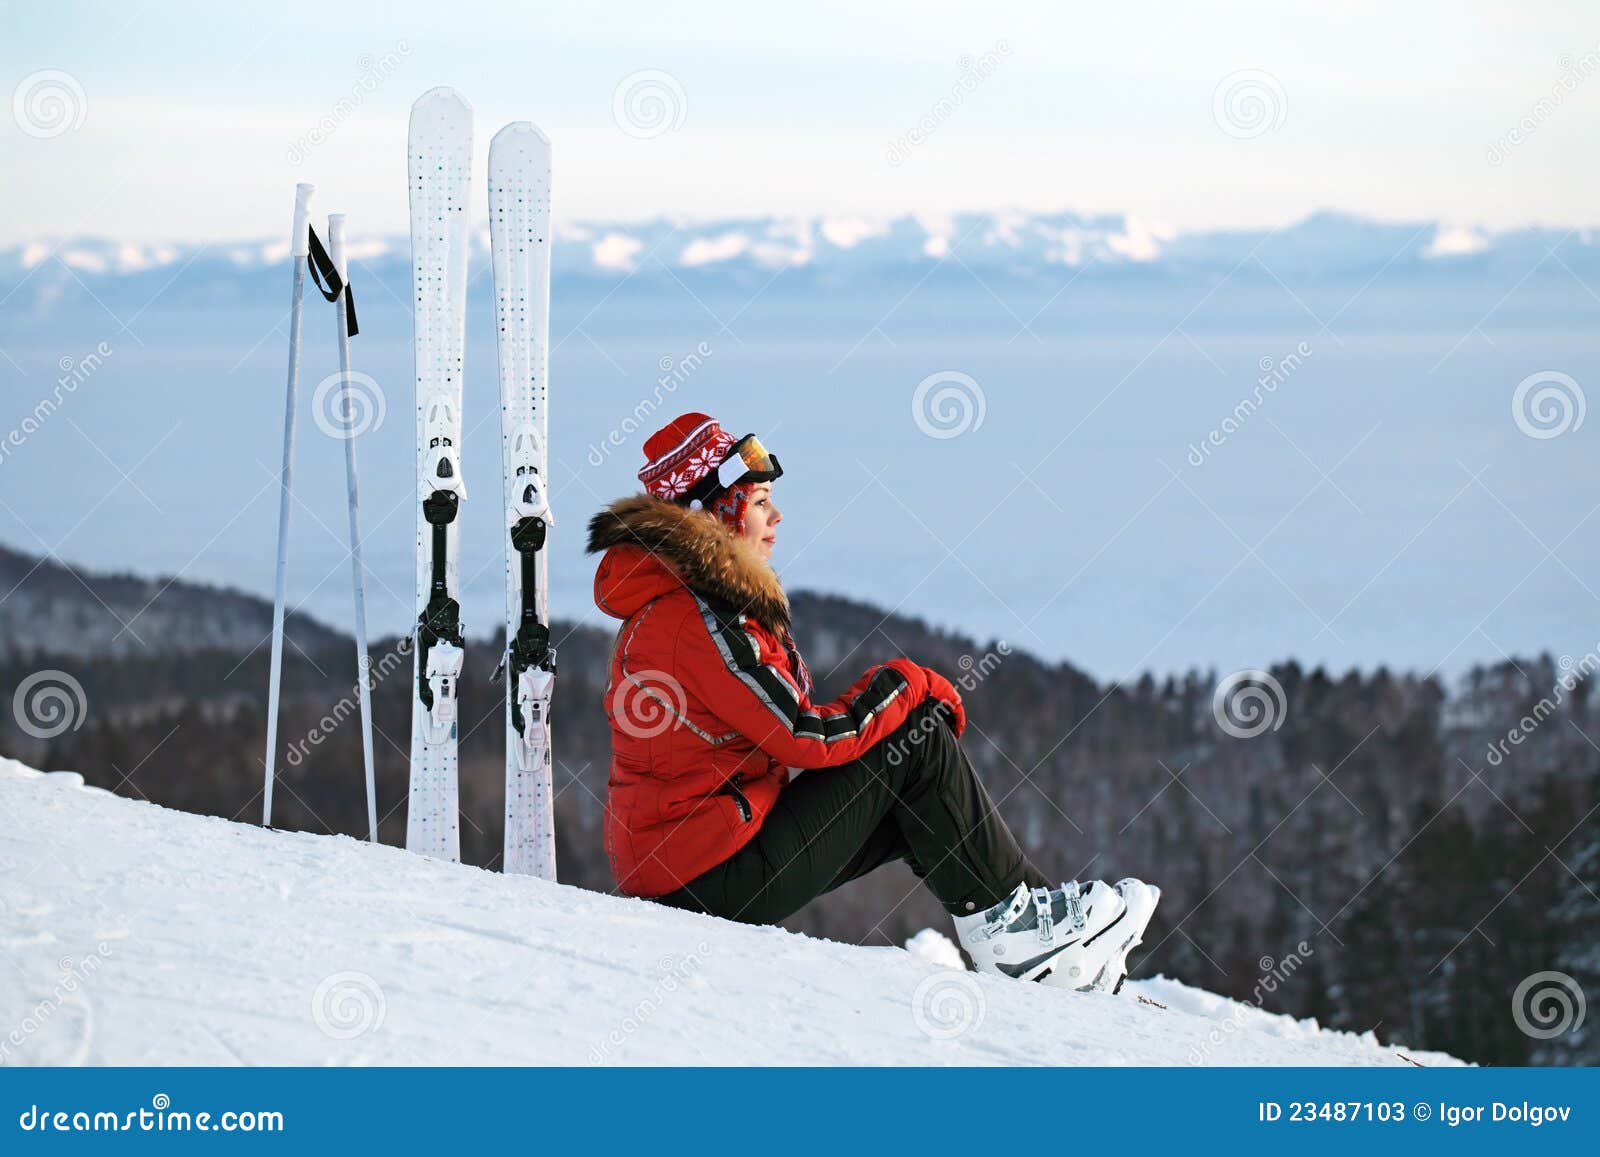 κλίση σκι. το κορίτσι απόστασης φαίνεται να κάνει σκι σκι συνεδρίασης βουνών κλίση στοχαστική